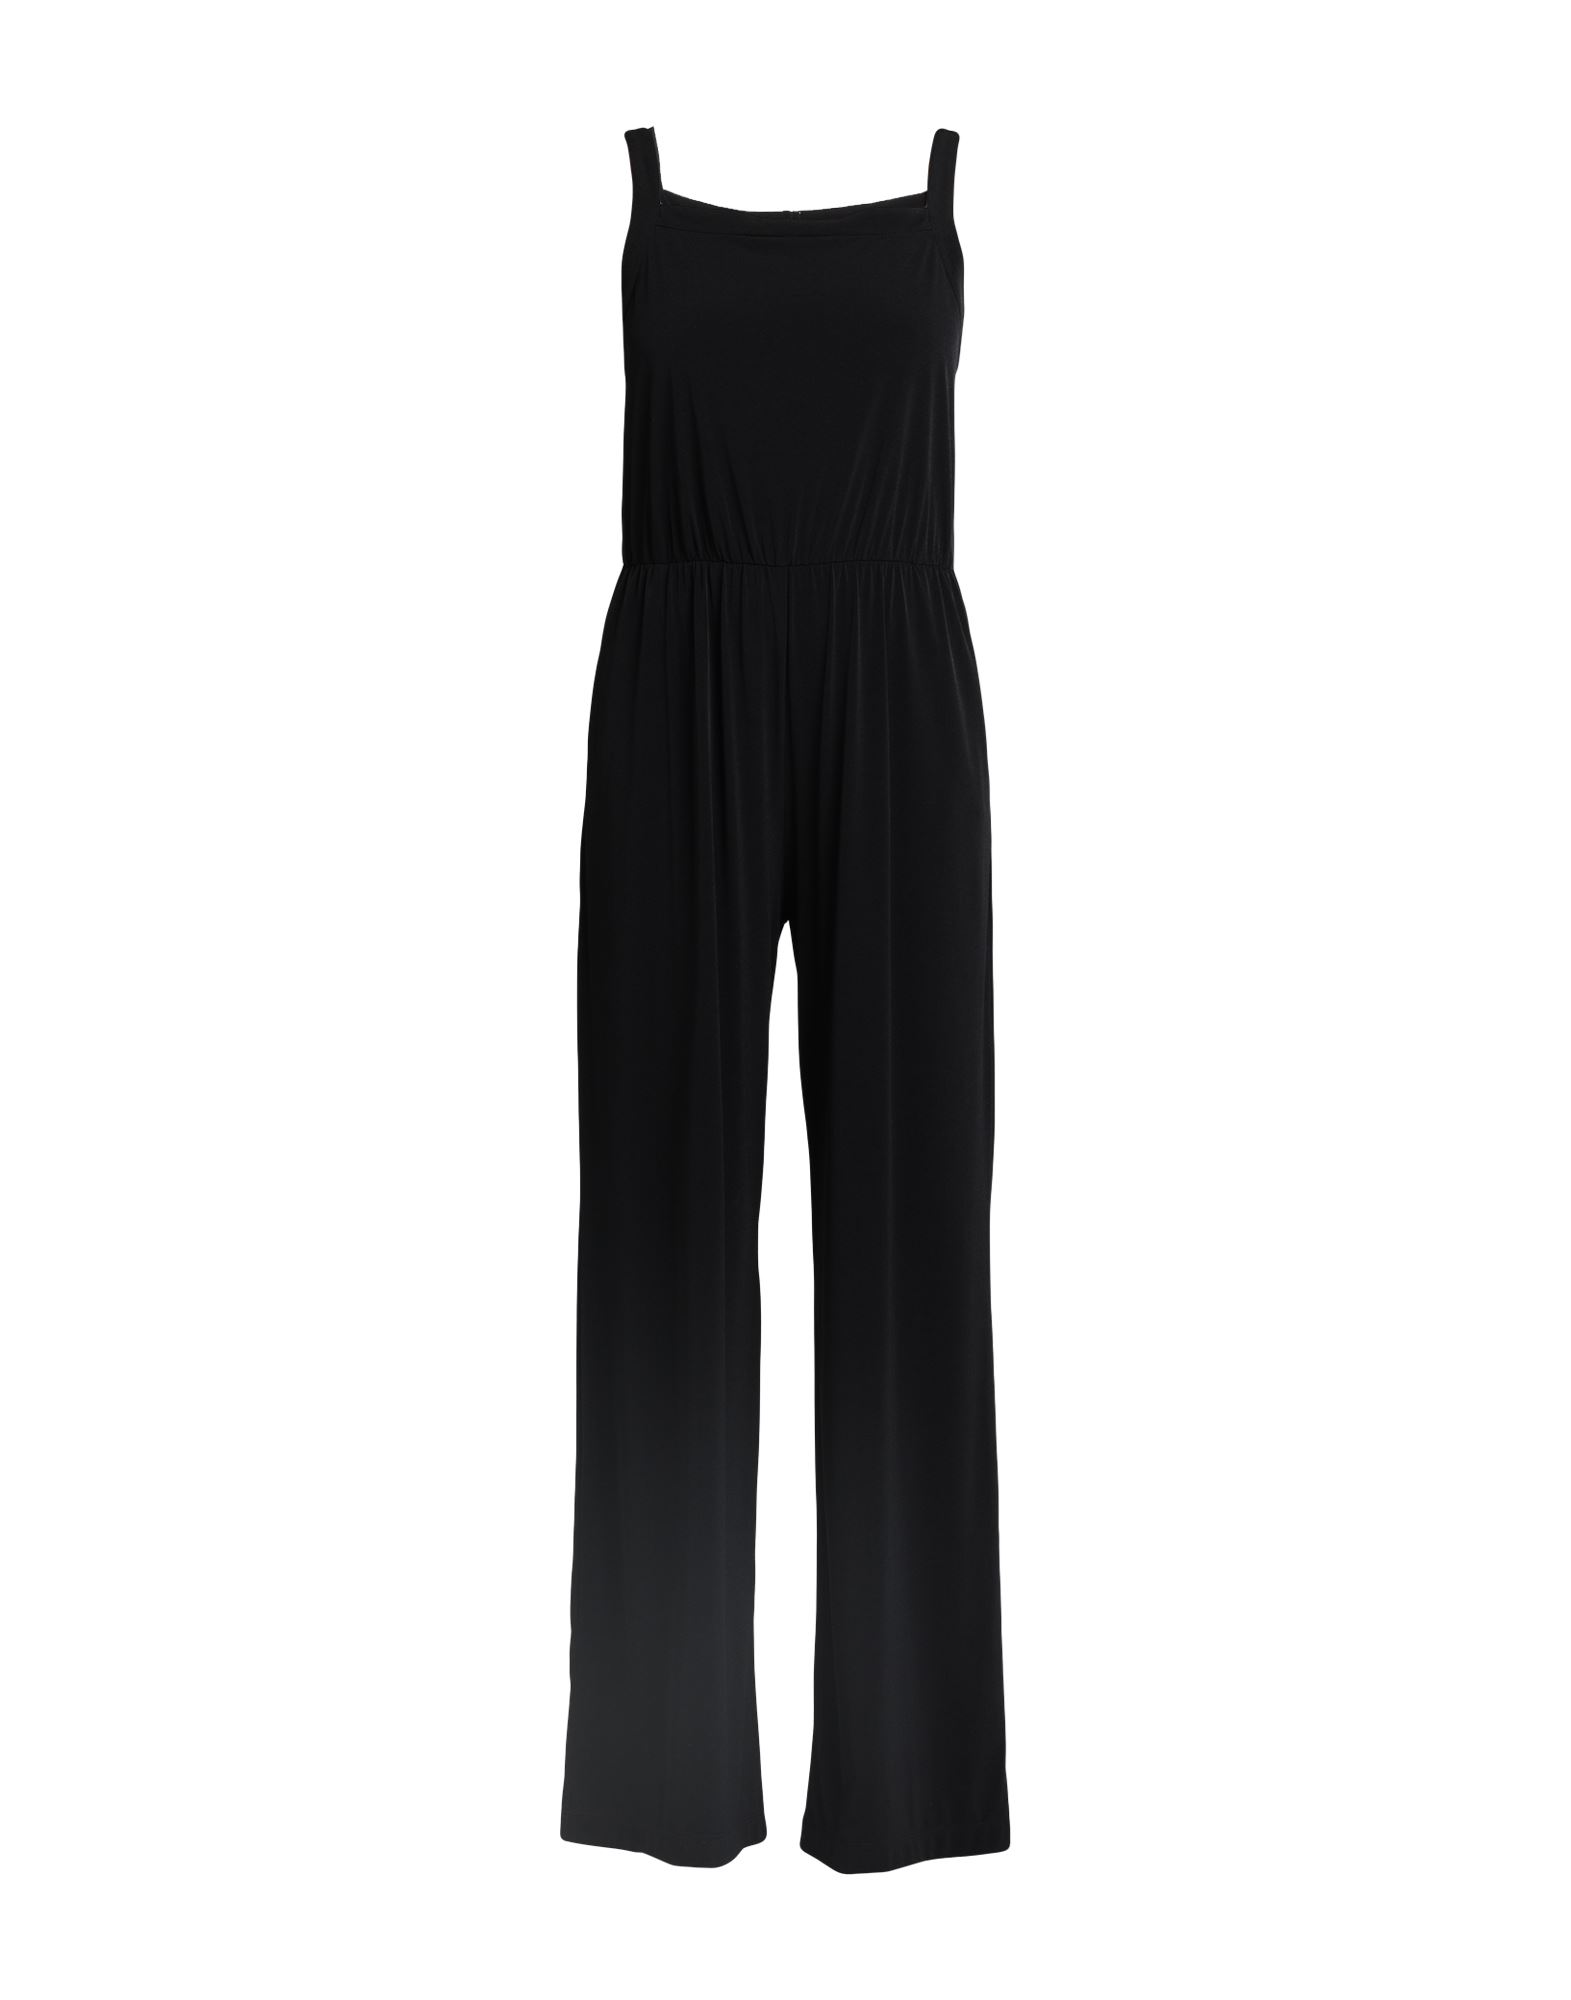 Shop Biancoghiaccio Woman Jumpsuit Black Size L Polyester, Elastane